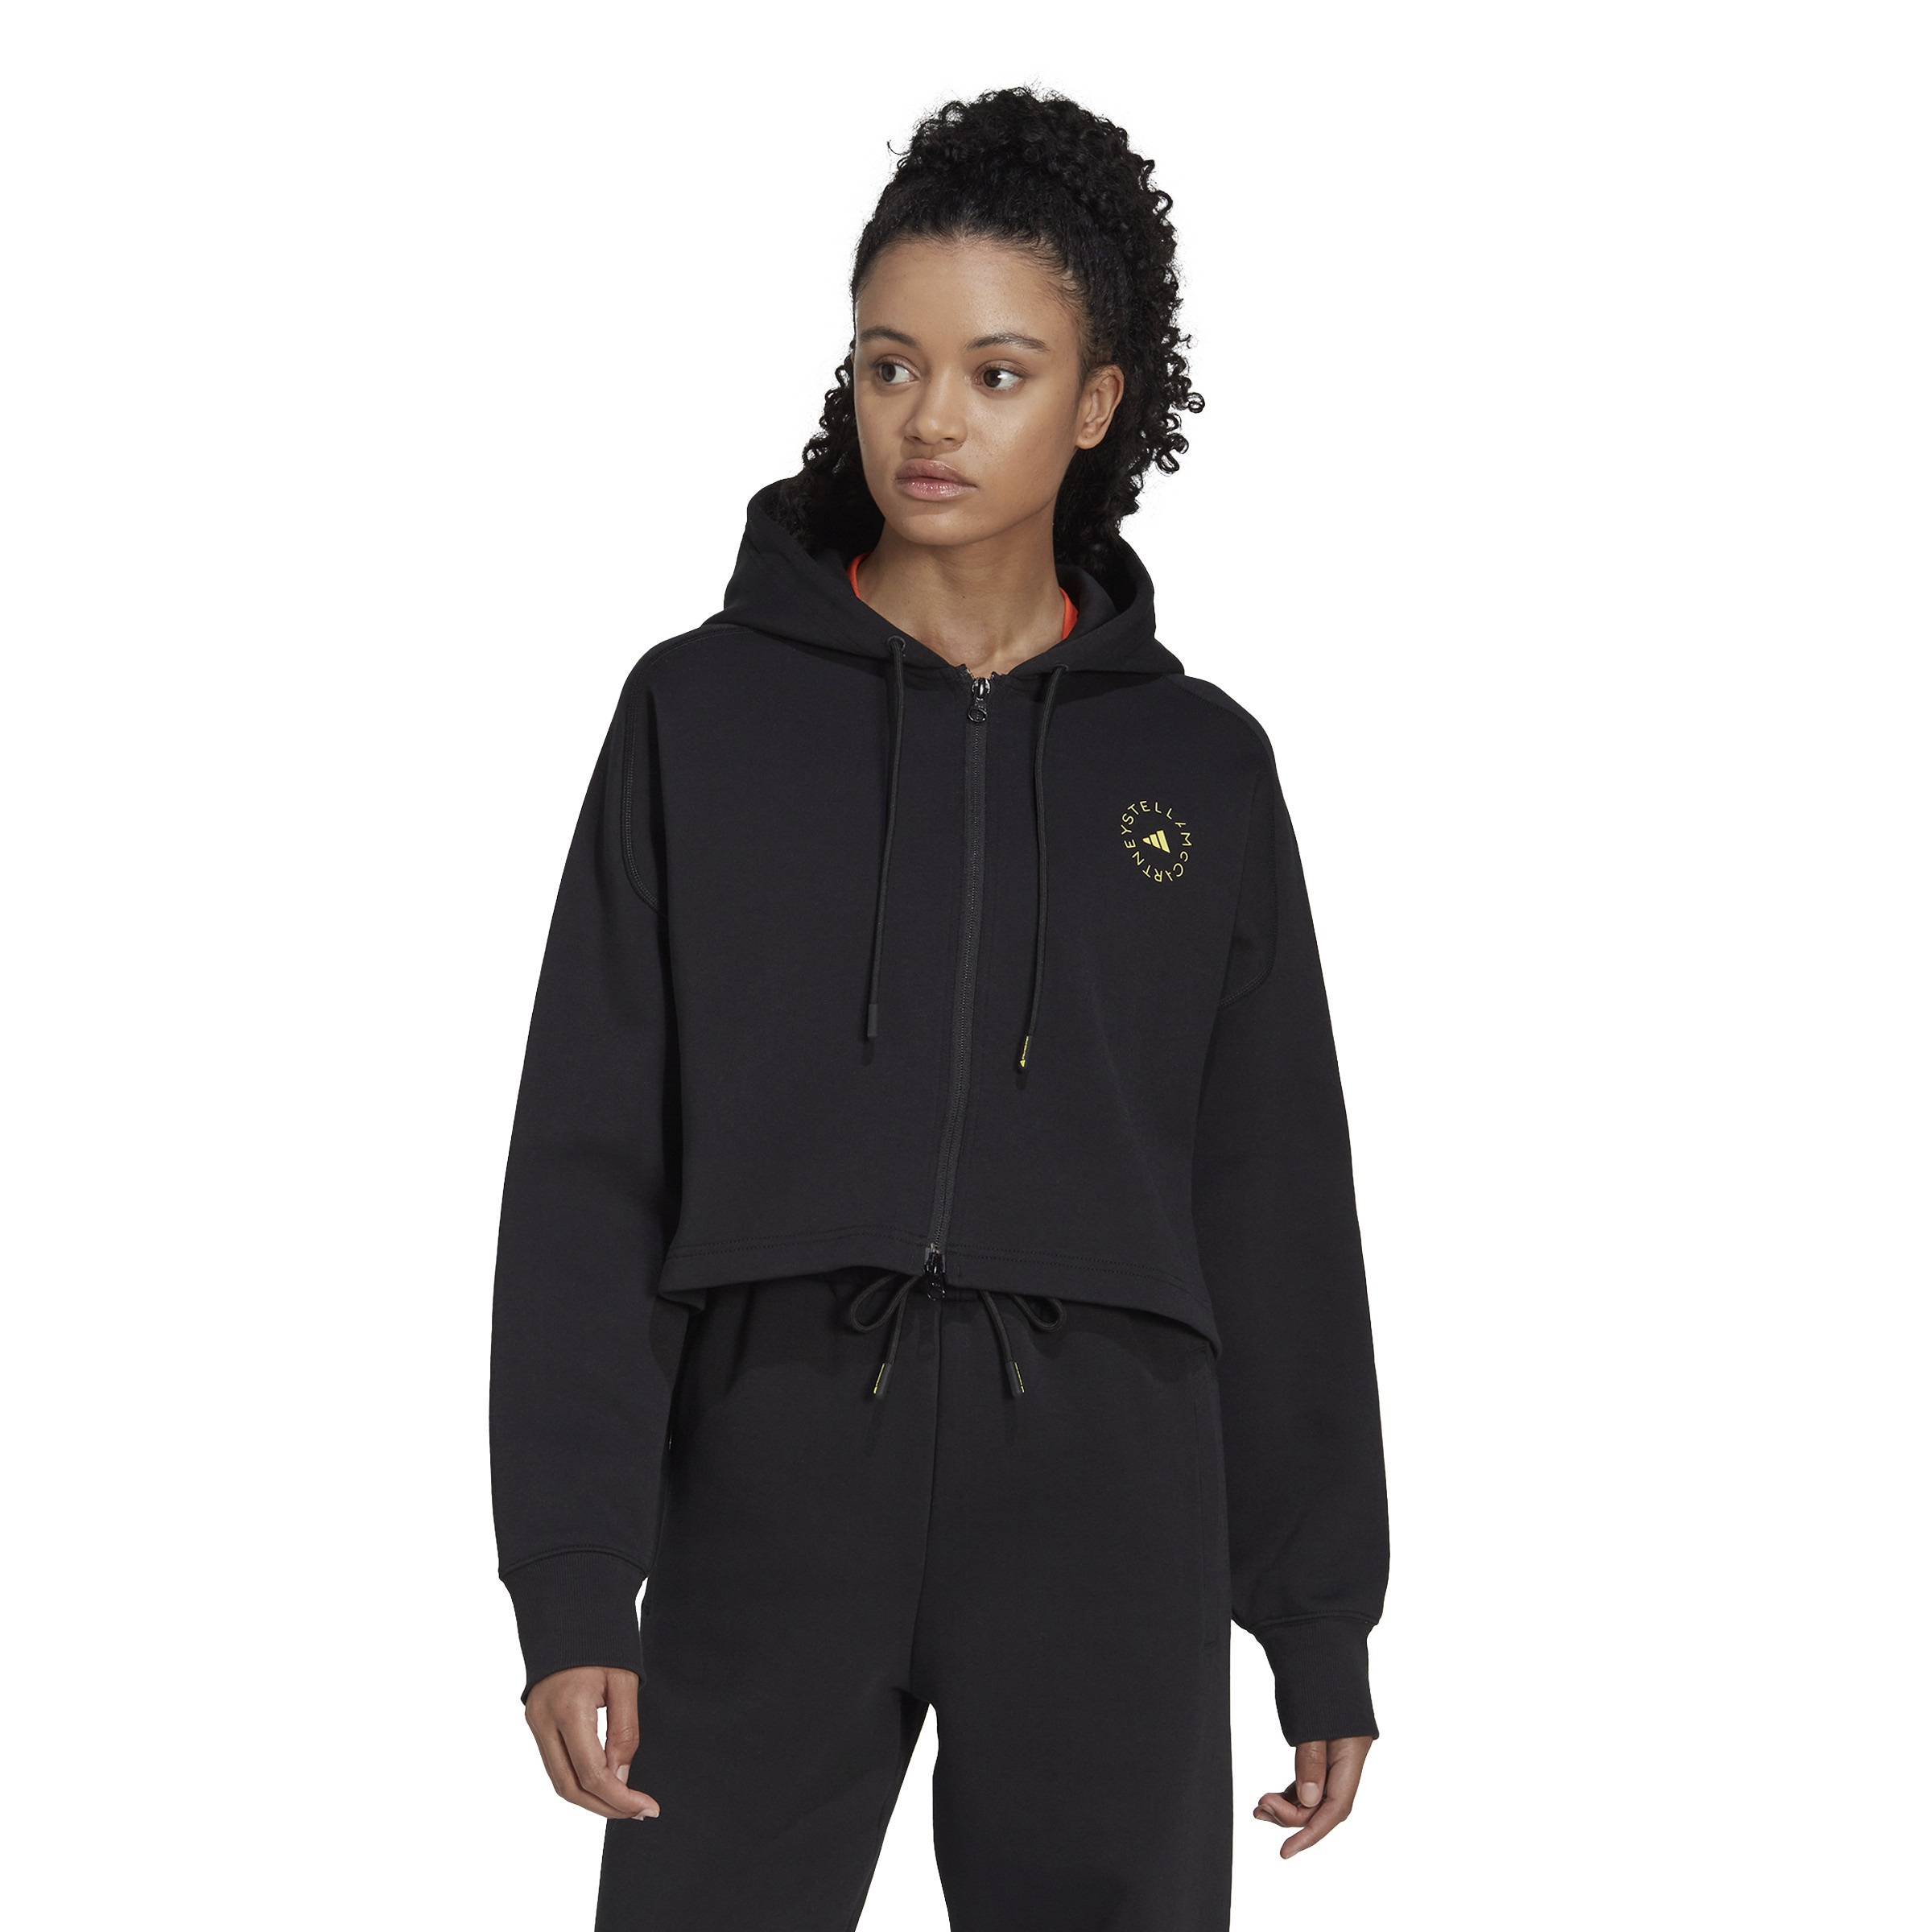 Adidas by Stella McCartney - Cropped hoodie, Black, large image number 3